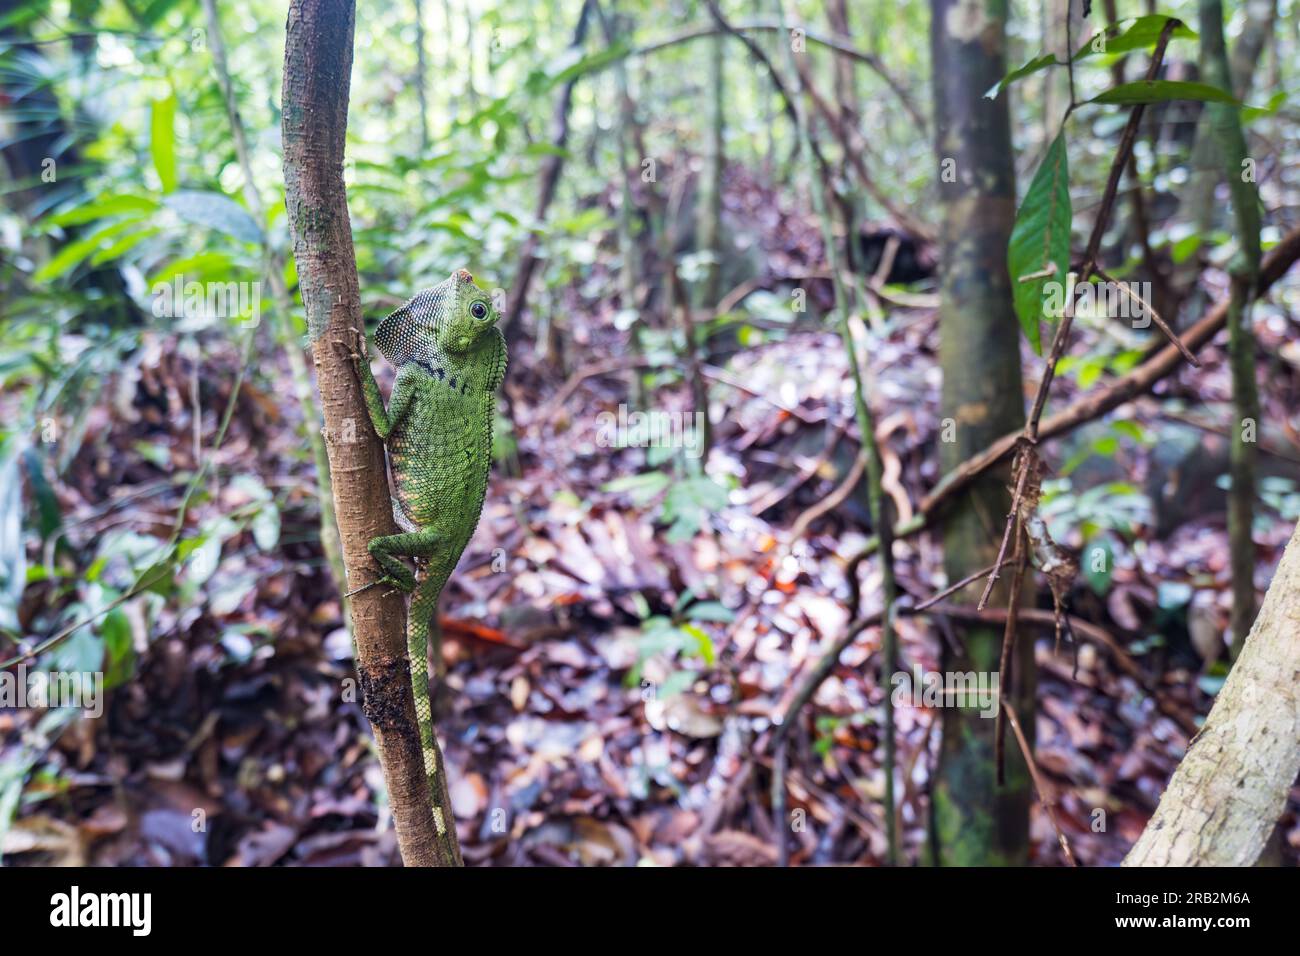 Drago della foresta del Borneo o lucertola della testa d'angelo del Borneo, specie endemica di rettili del Borneo. Foto Stock